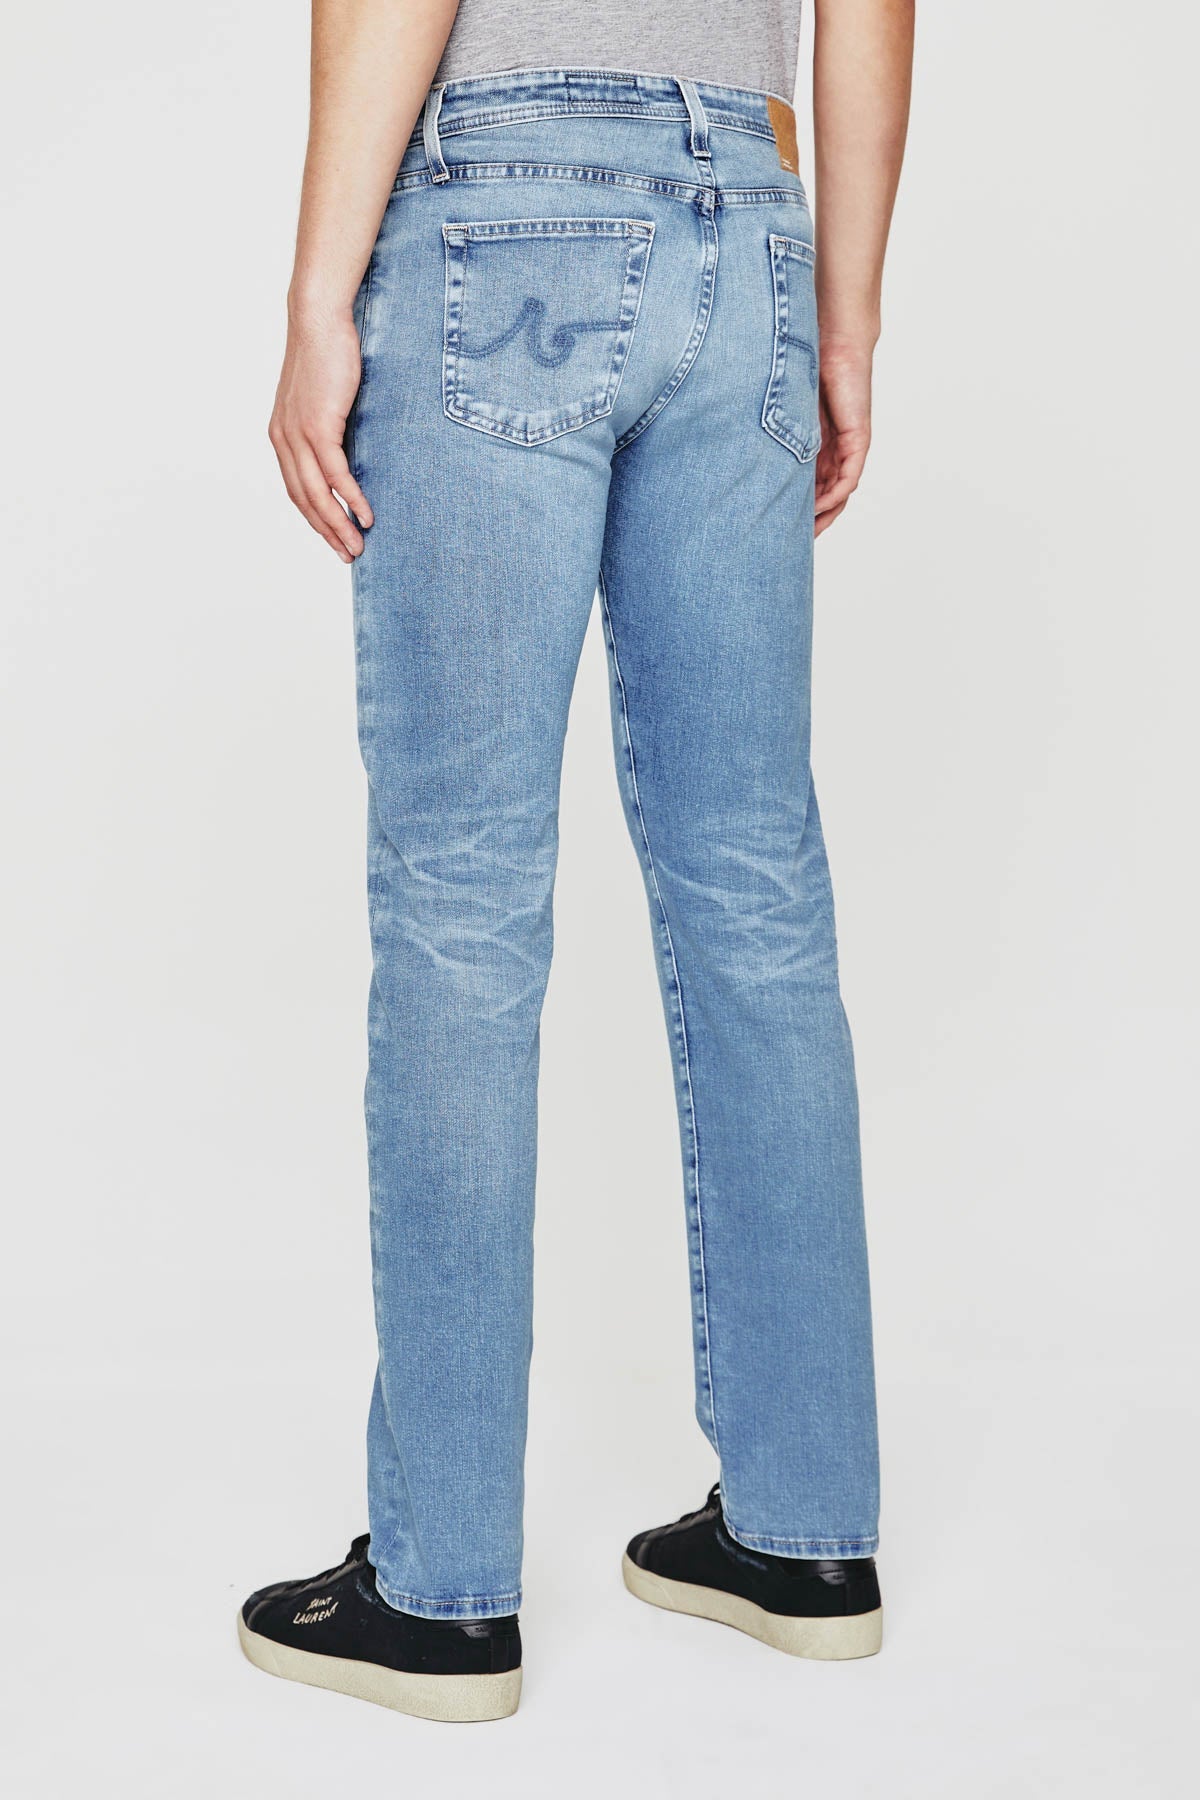 Tellis Modern Slim Jean - AG Jeans - Danali - 1783HYI-16YCOV-30